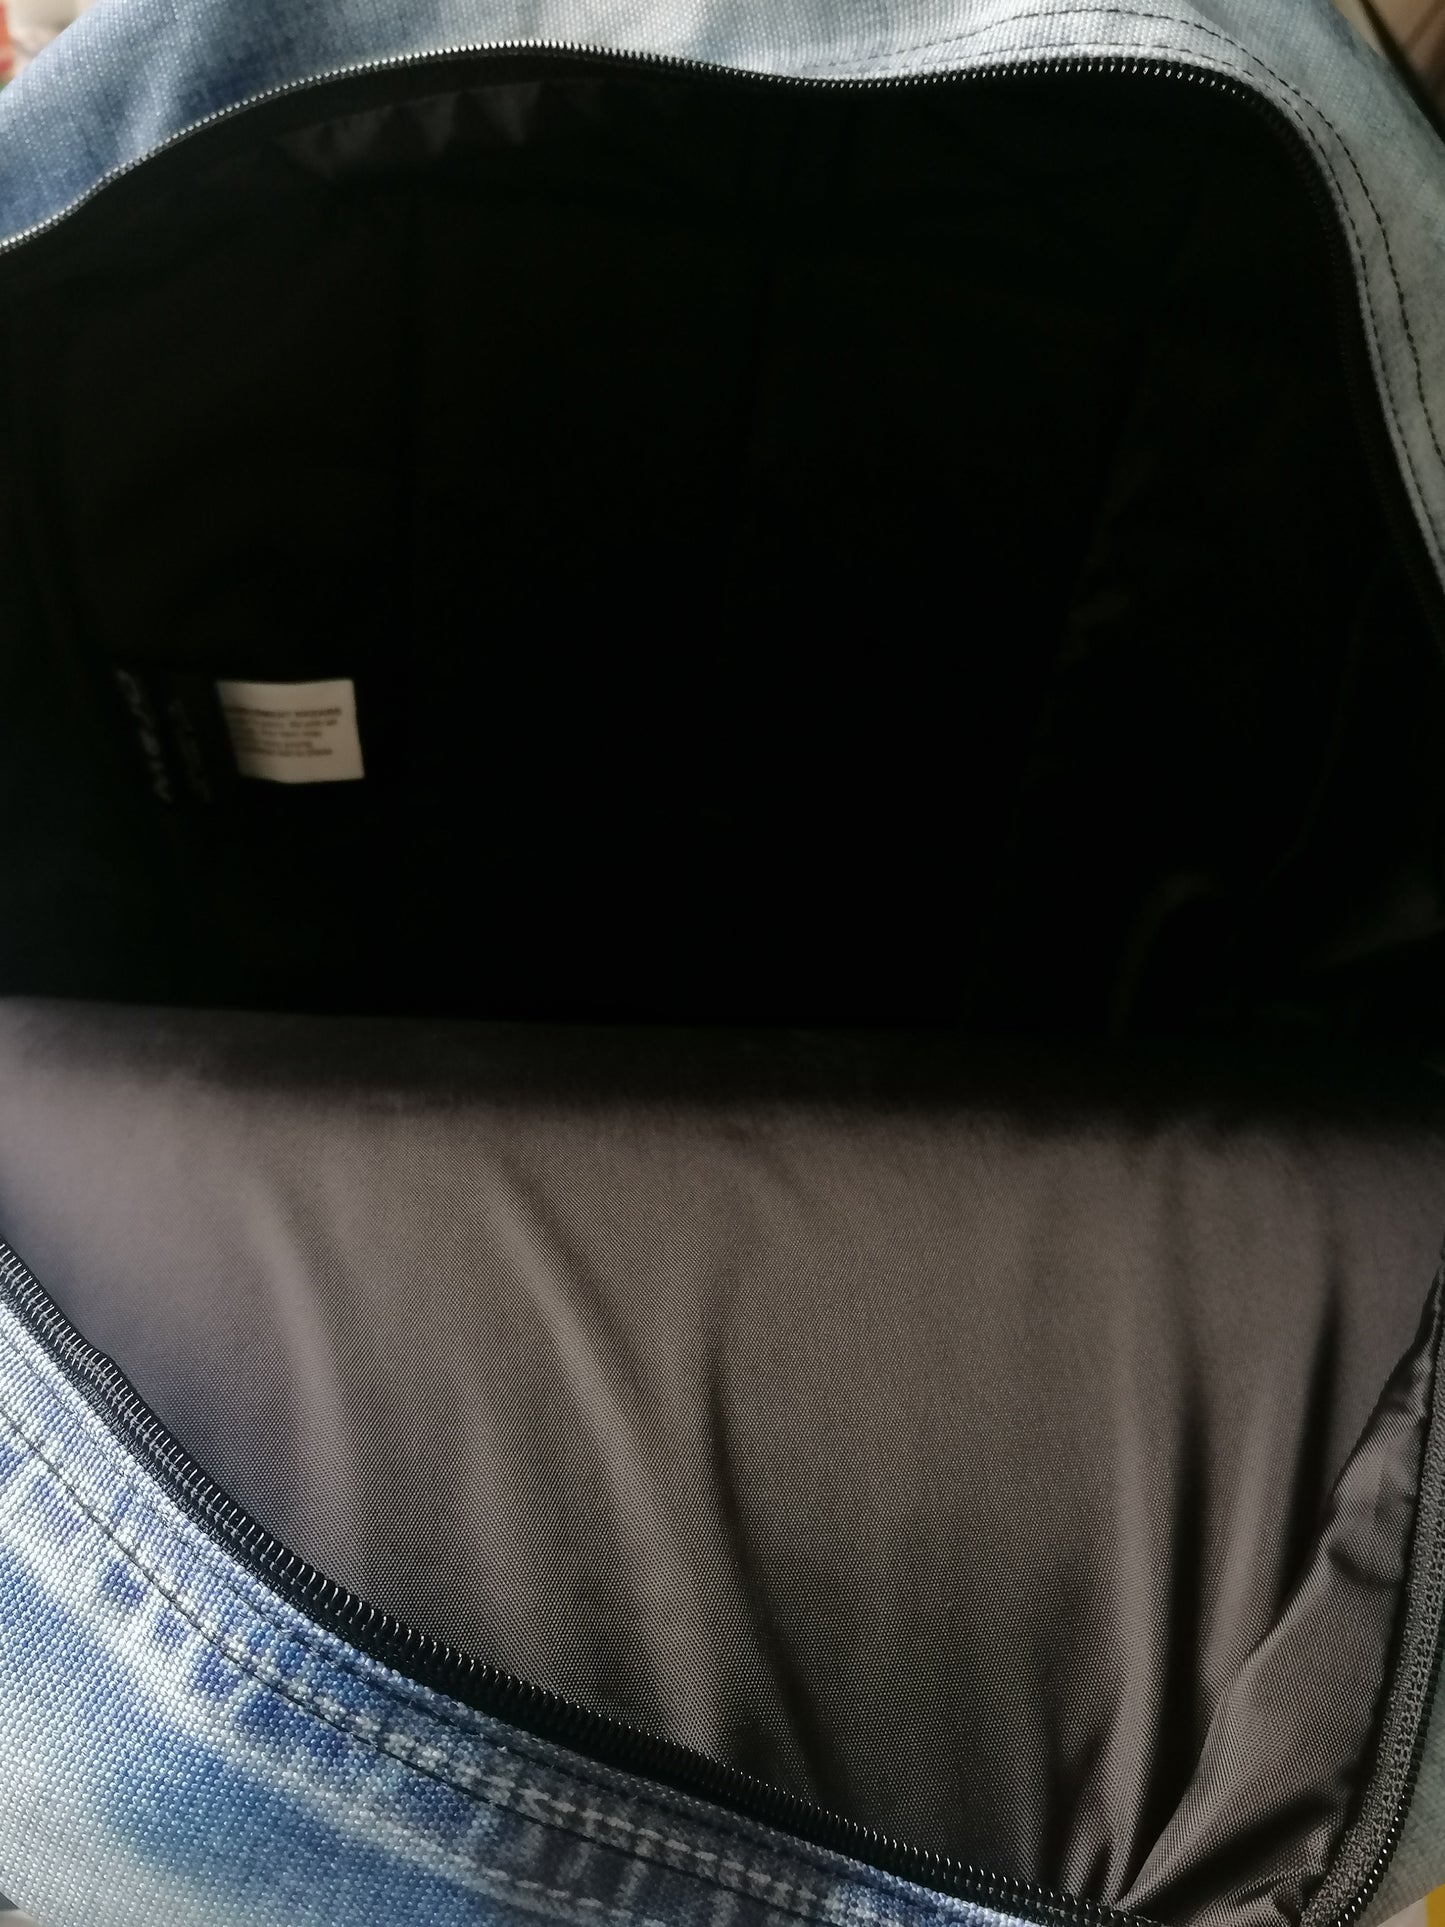 Mojo -Rucksäcke -Rucksack. Blue Jeans Look Print. Einige in der Tasche.